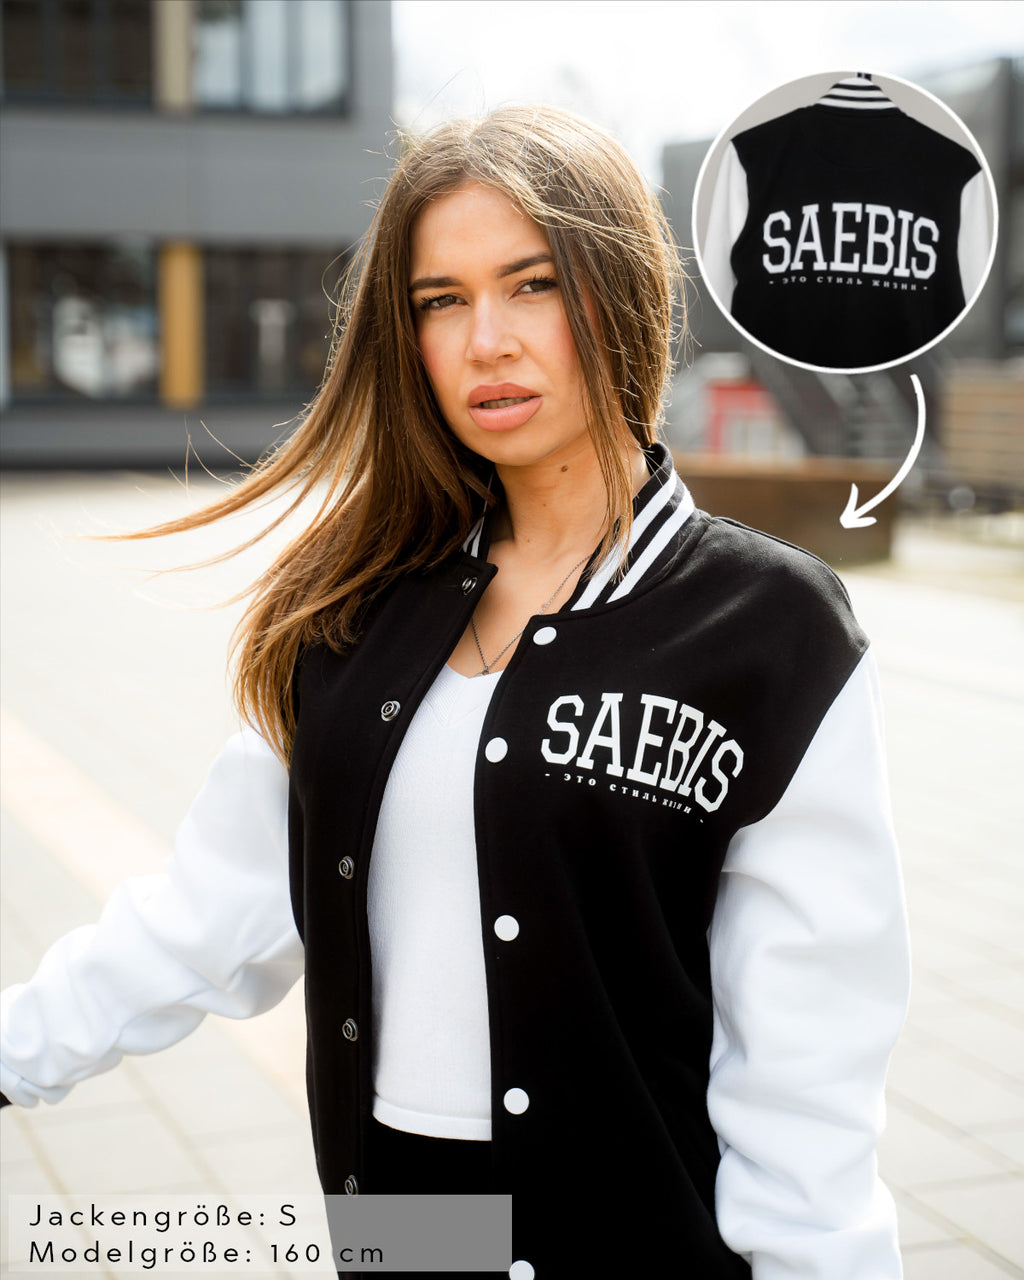 Blozend Nederigheid vlot Lifestyle Damen Oversized College Jacke schwarz-weiß by SAEBIS®